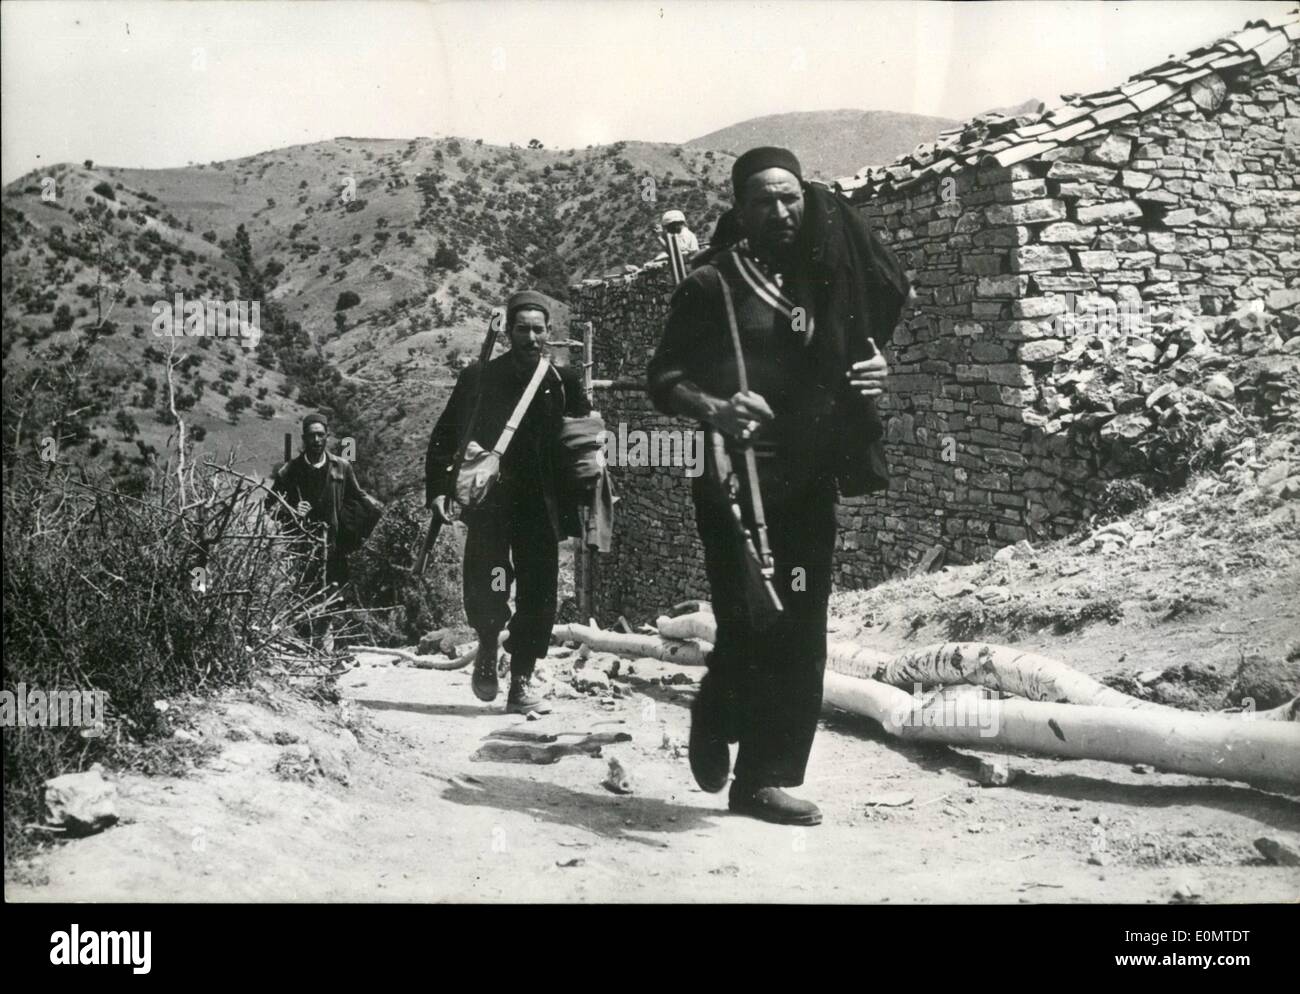 Giugno 06, 1956 - nativi Co-Operate in guerra contro i ribelli: fedeli indigeni algerini stanno aiutando le truppe francesi nella loro guerra contro i ribelli nella zona Souman. Mostra fotografica di indigeni armati di fucili a una missione di pattuglia. Foto Stock